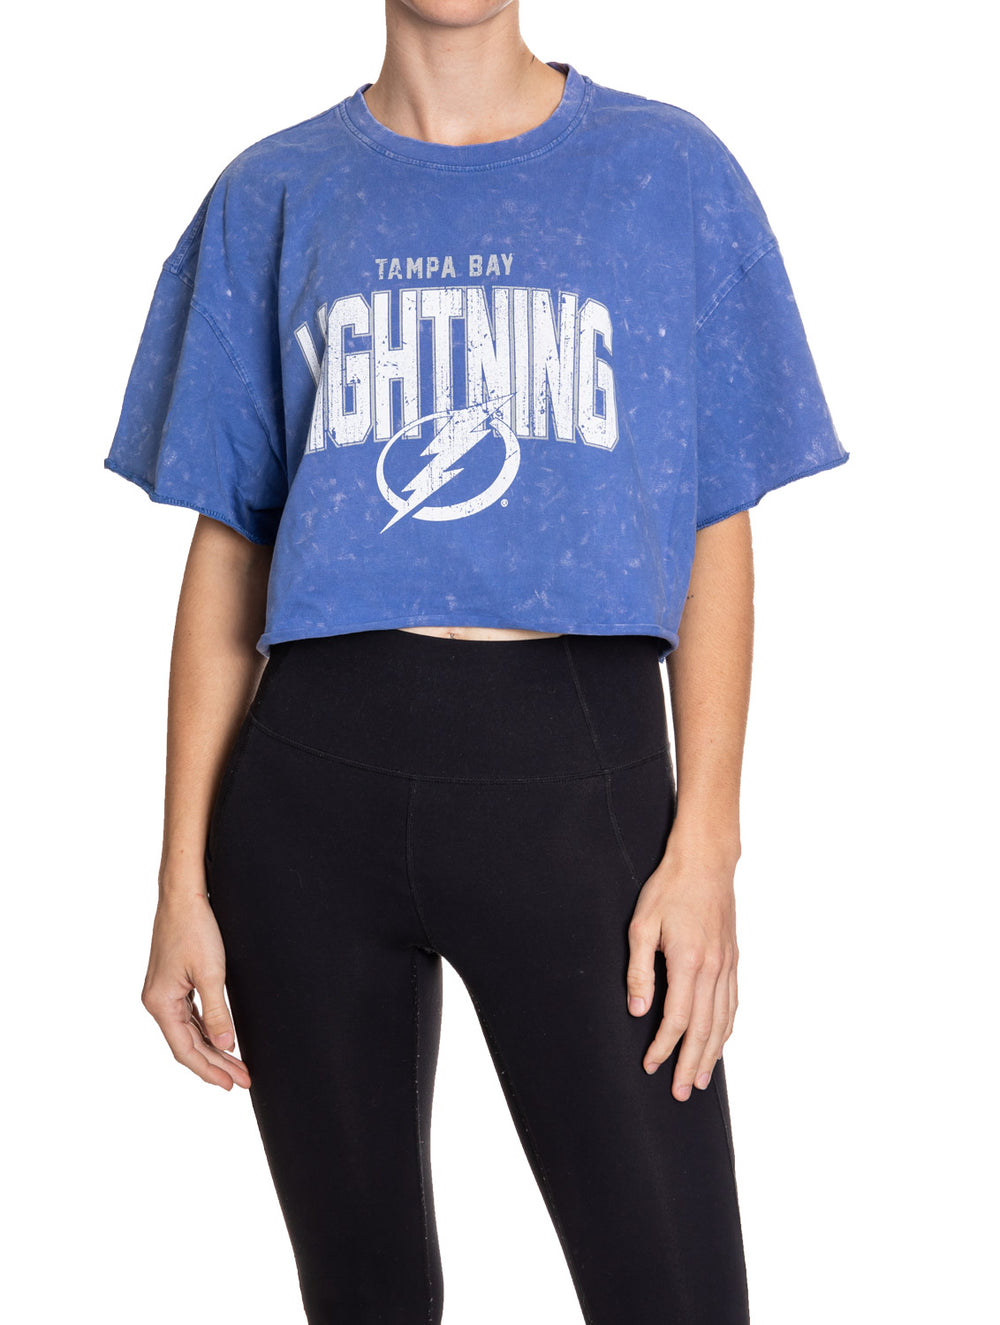 Tampa Bay Lightning Ladies Apparel, Ladies Lightning Clothing, Merchandise